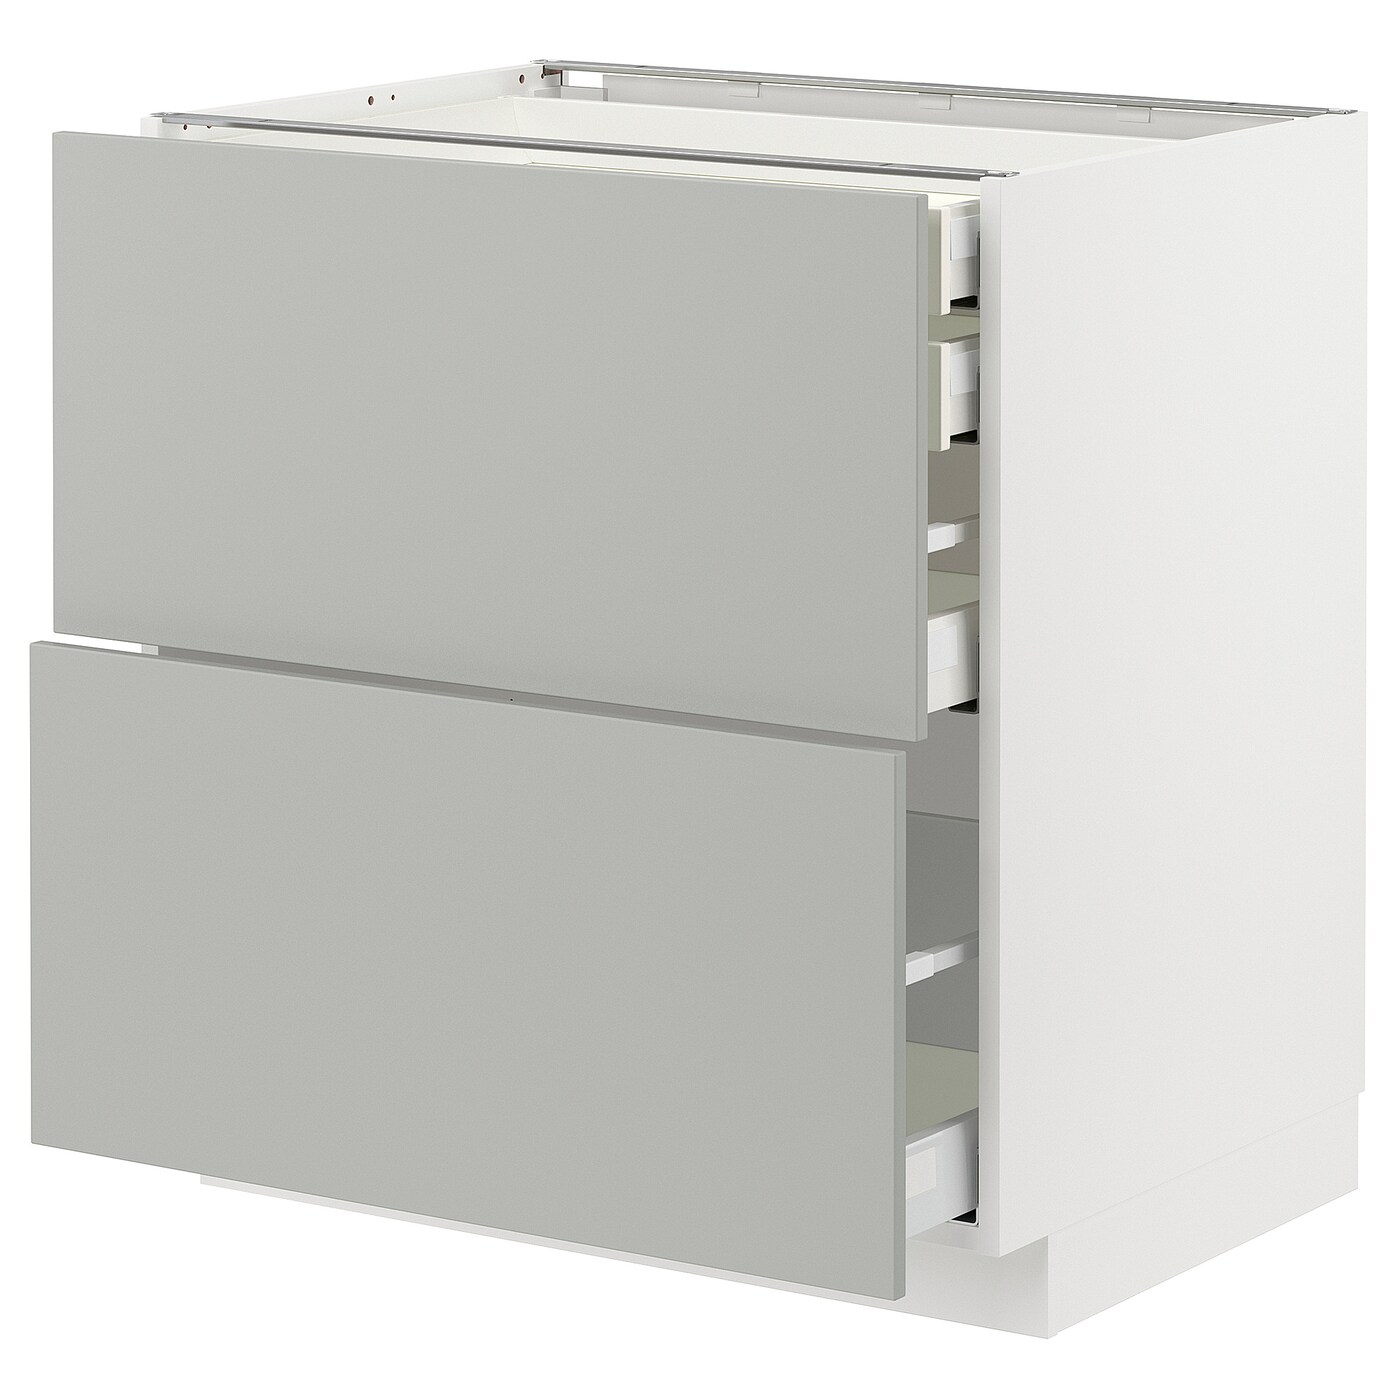 Напольный шкаф - METOD / MAXIMERA IKEA/ МЕТОД/ МАКСИМЕРА ИКЕА,  88х80 см, белый/светло-серый